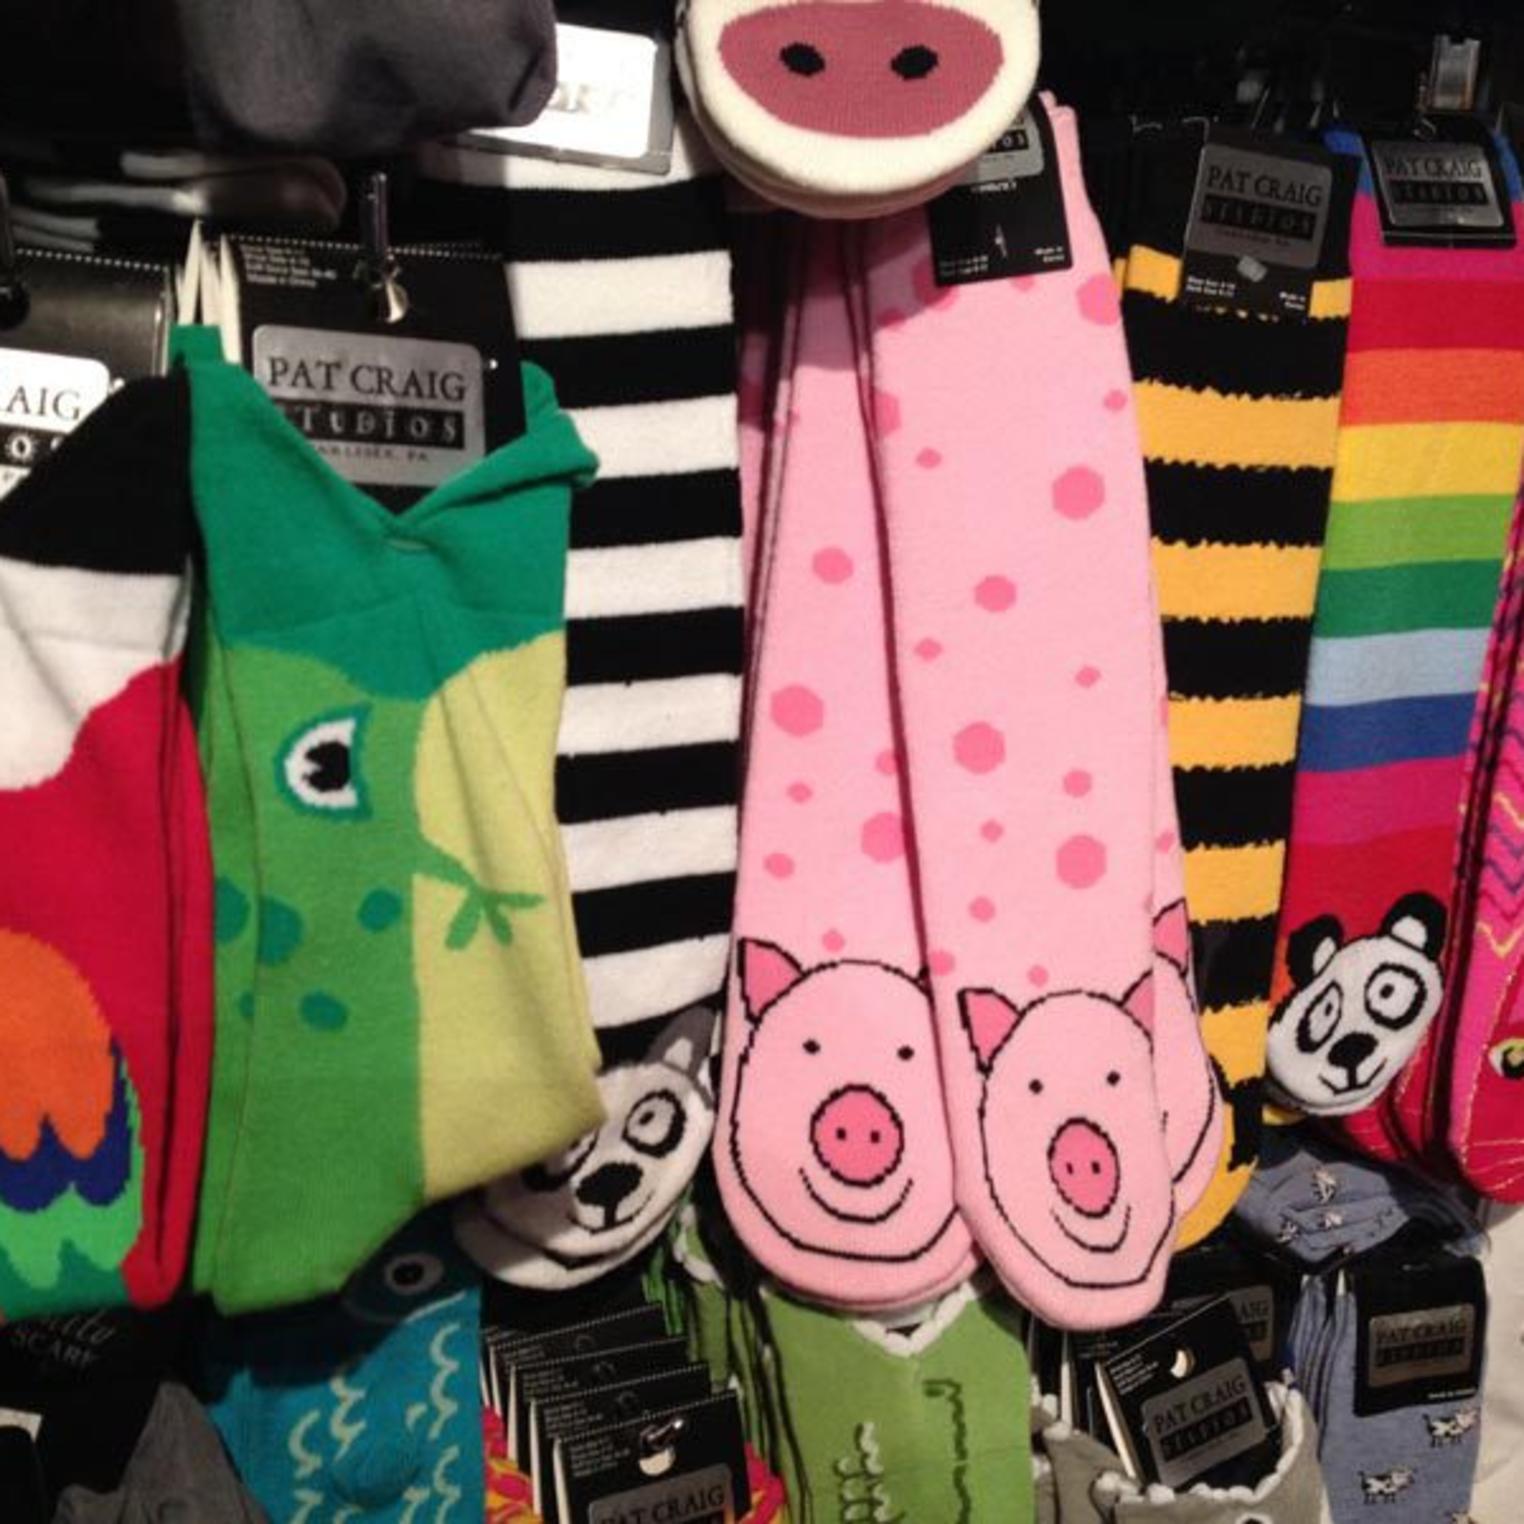 Find fun socks at Pat Craig Studio